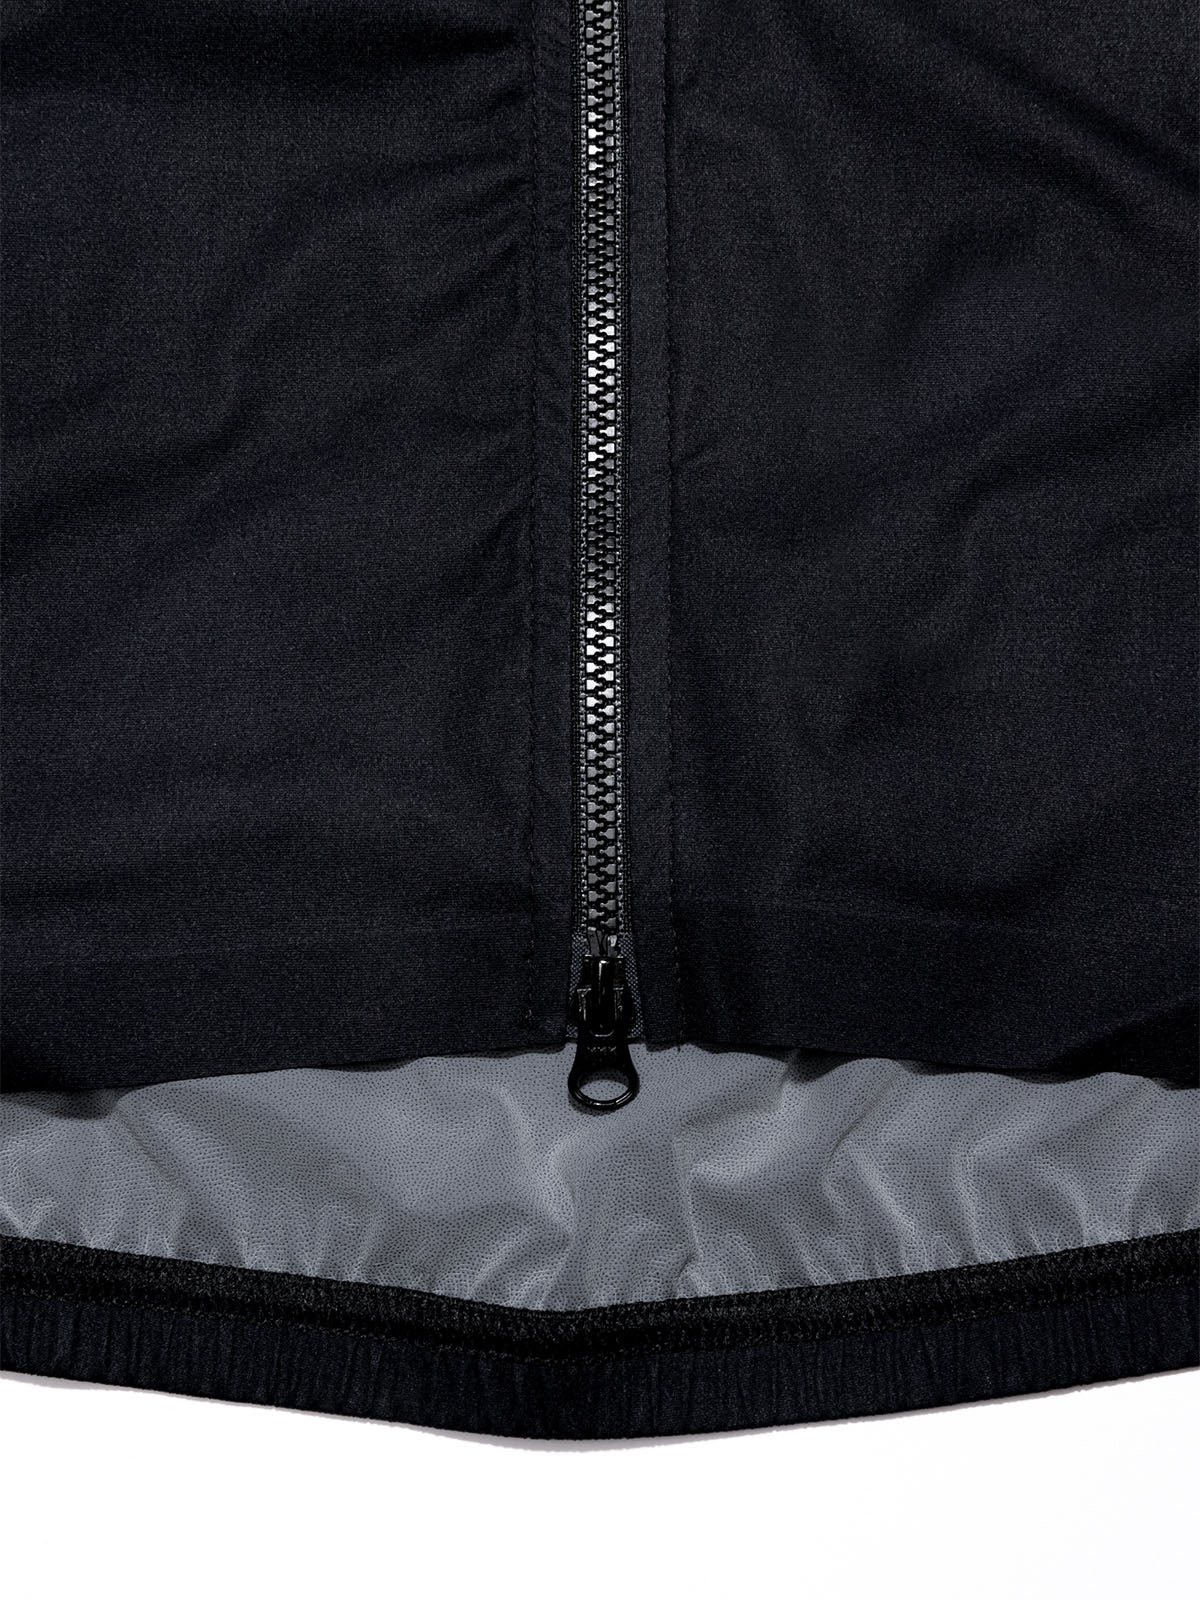 Altosphere Jacket från Mission Workshop - vädertåliga väskor och tekniska kläder - San Francisco och Los Angeles - byggd för att tåla - garanterad för alltid